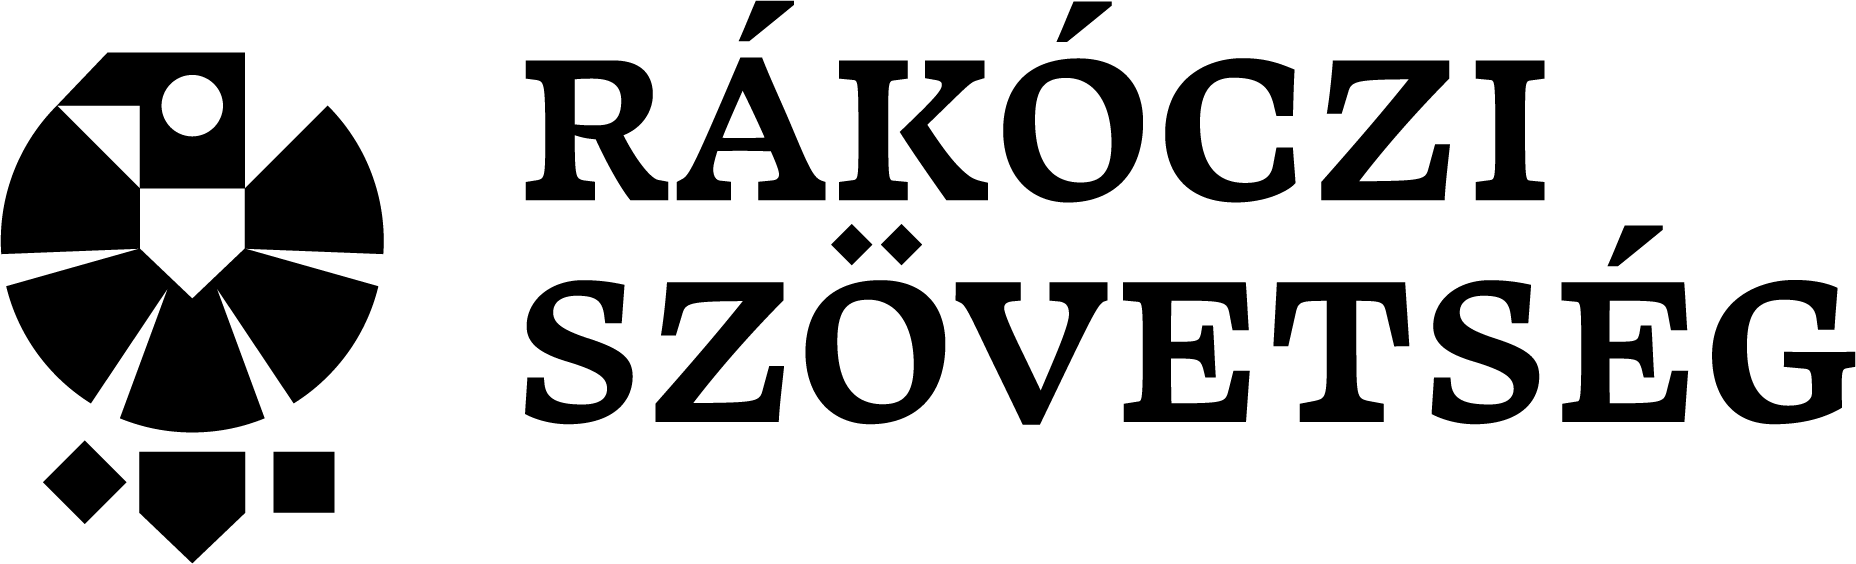 a Rákóczi szövetség logója